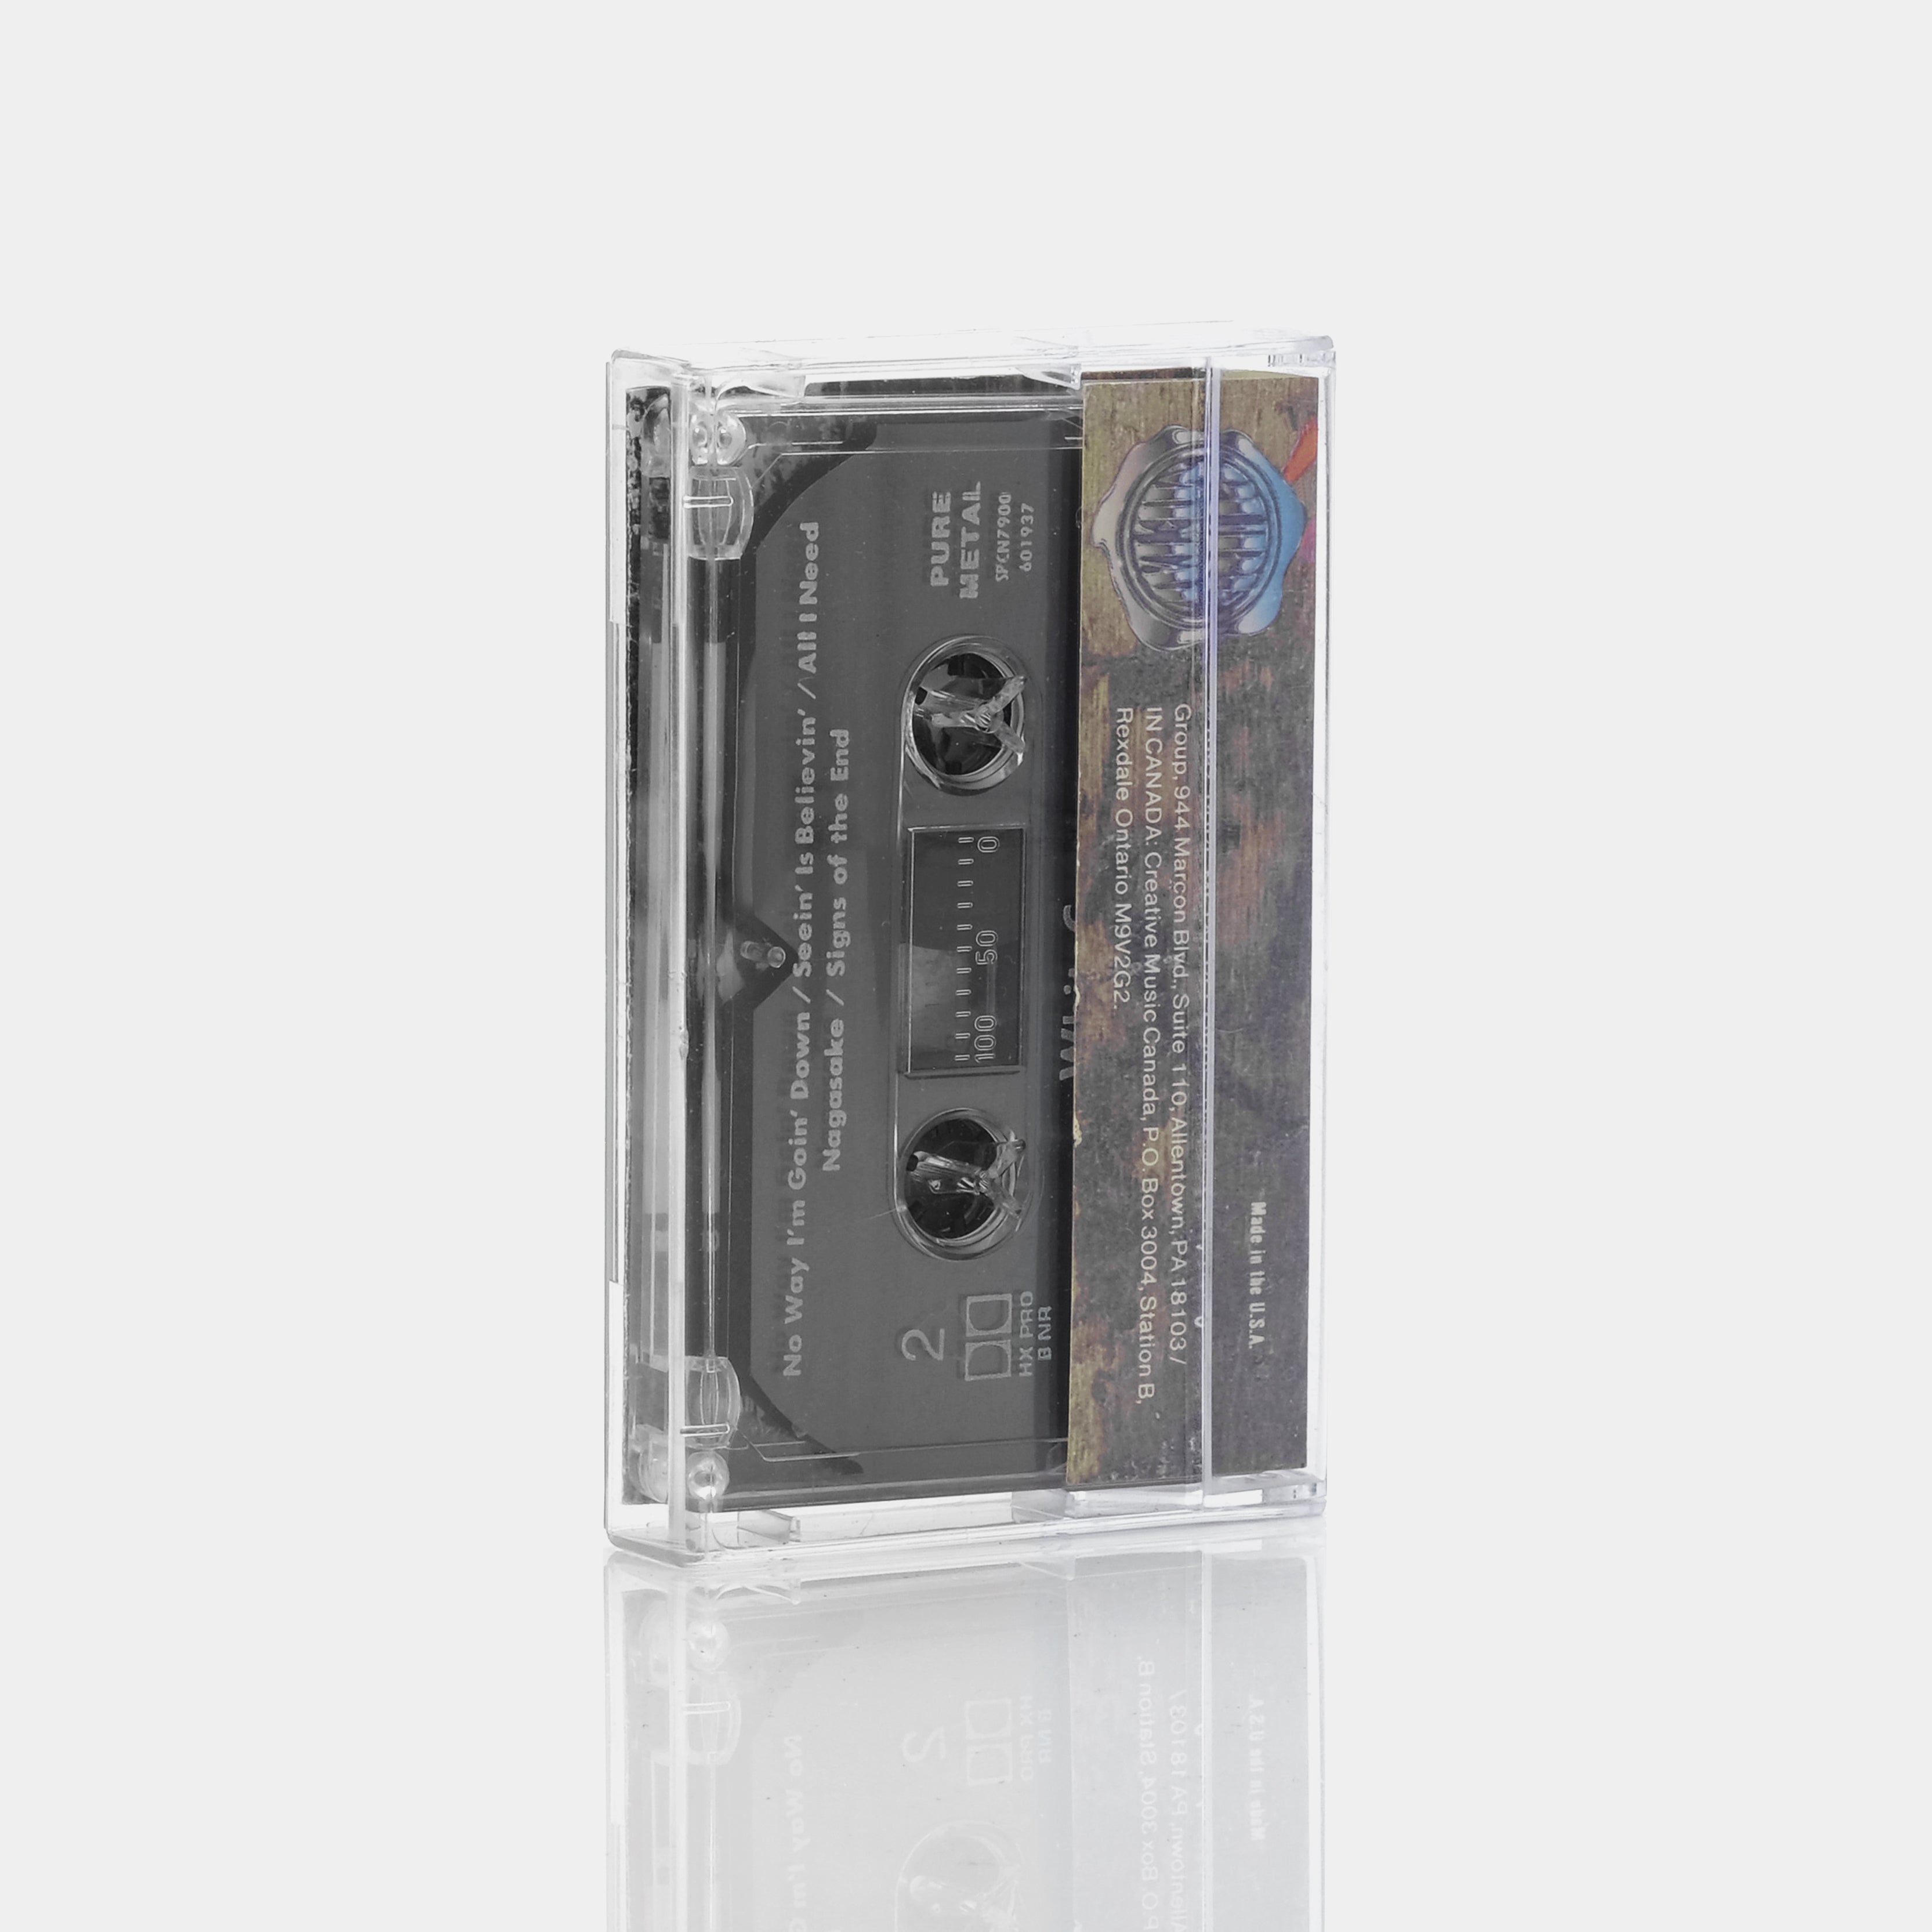 Whitecross - Whitecross Cassette Tape